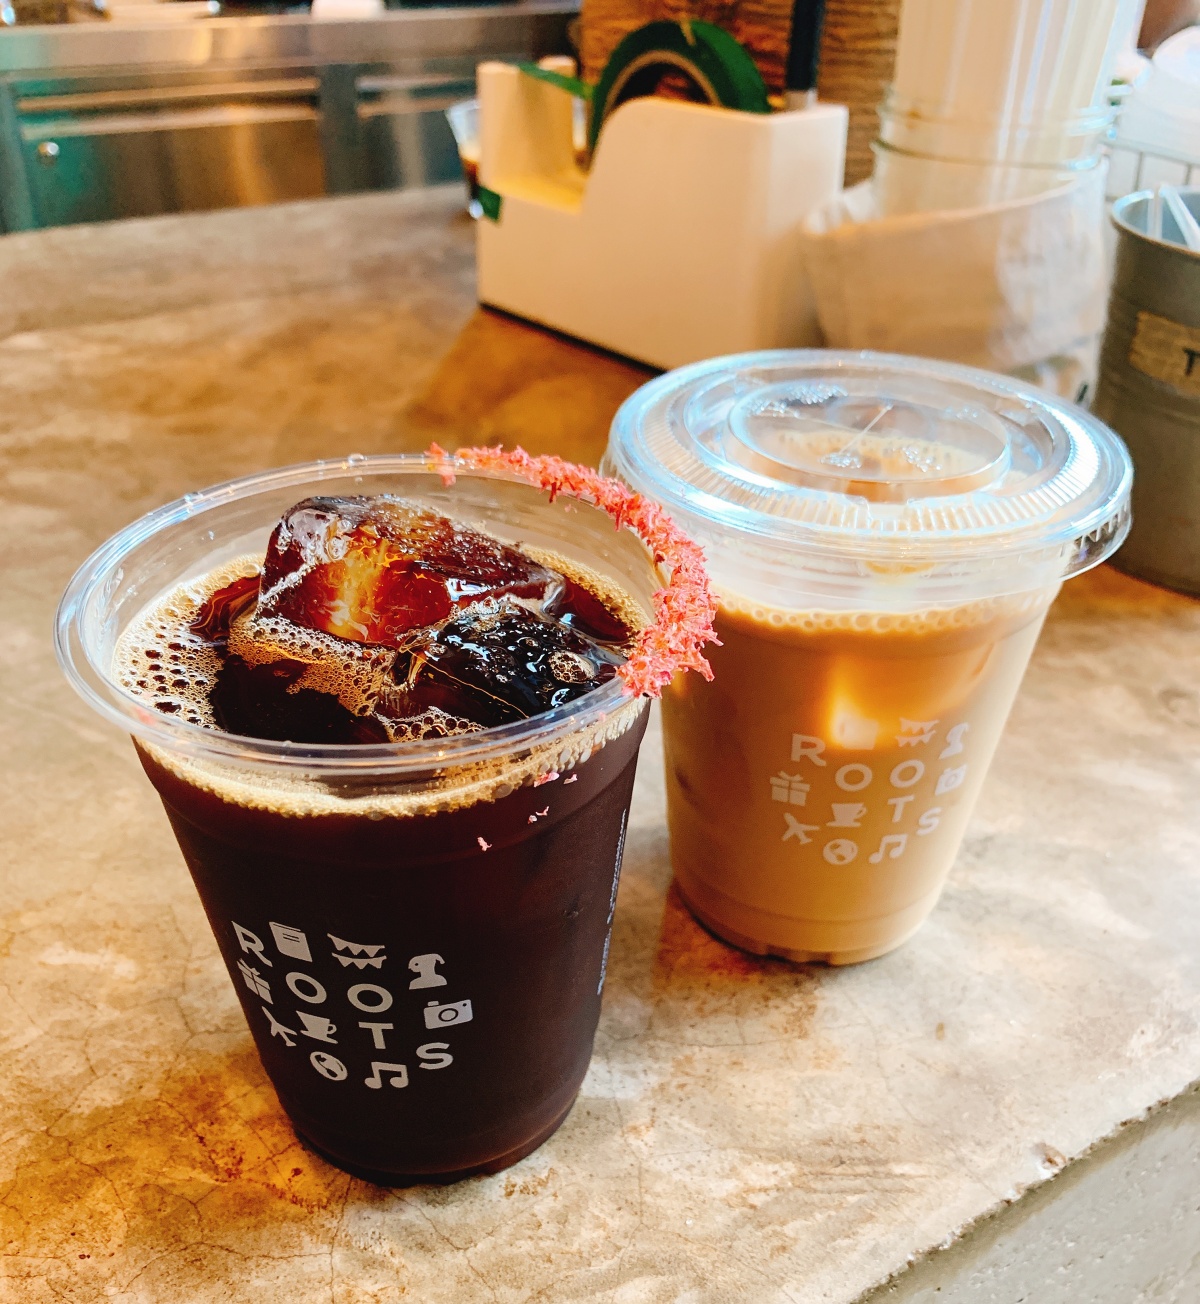 ➻ 曼谷食記│BTS Thong Lor【Roots coffee】- The Commons裡的質感咖啡店